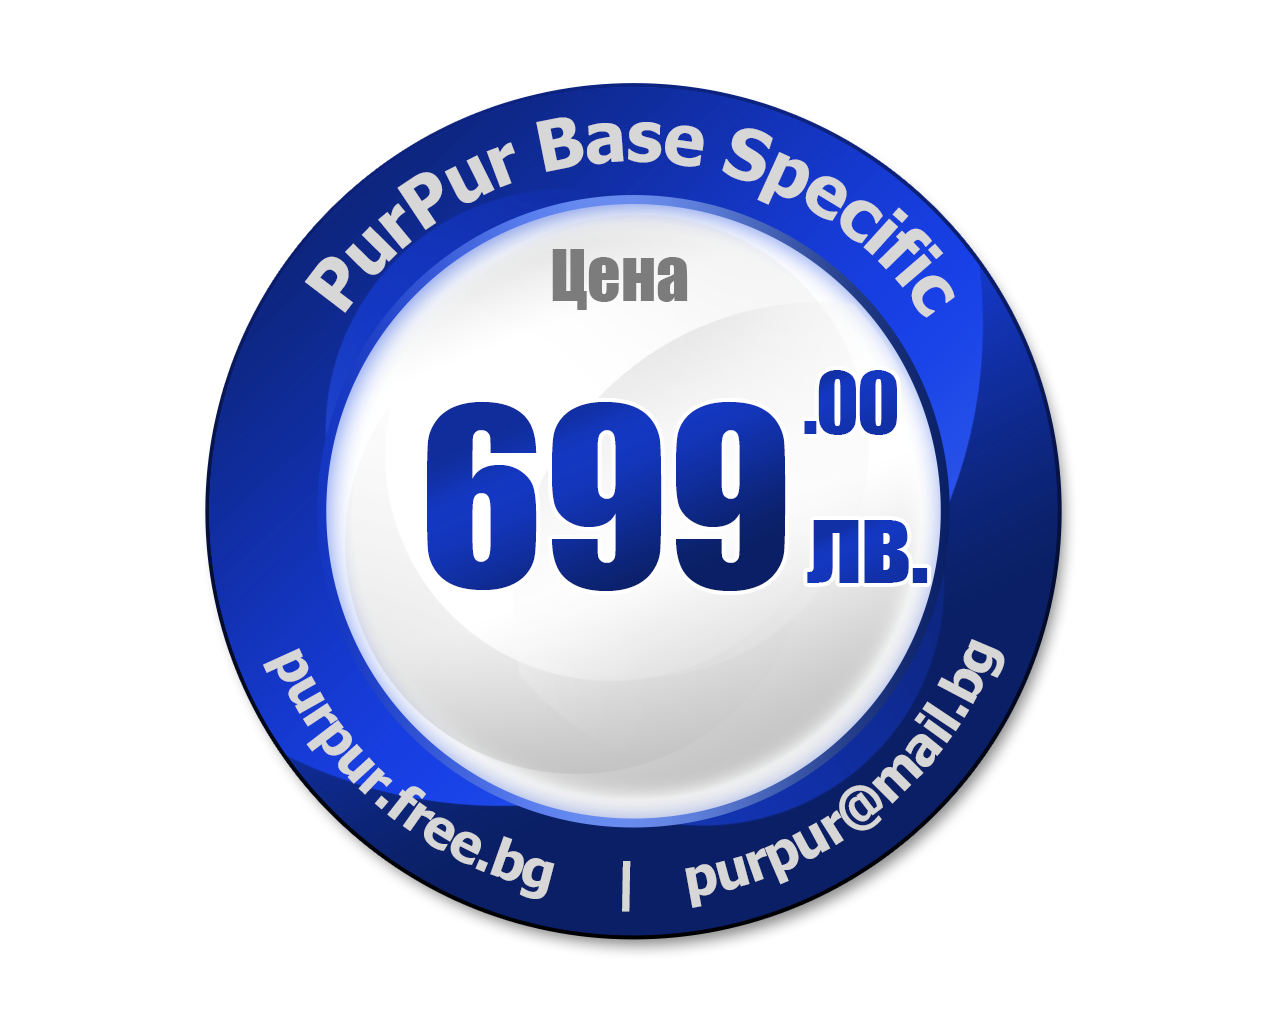 Цена на PurPur Base Specific - 699 лв.